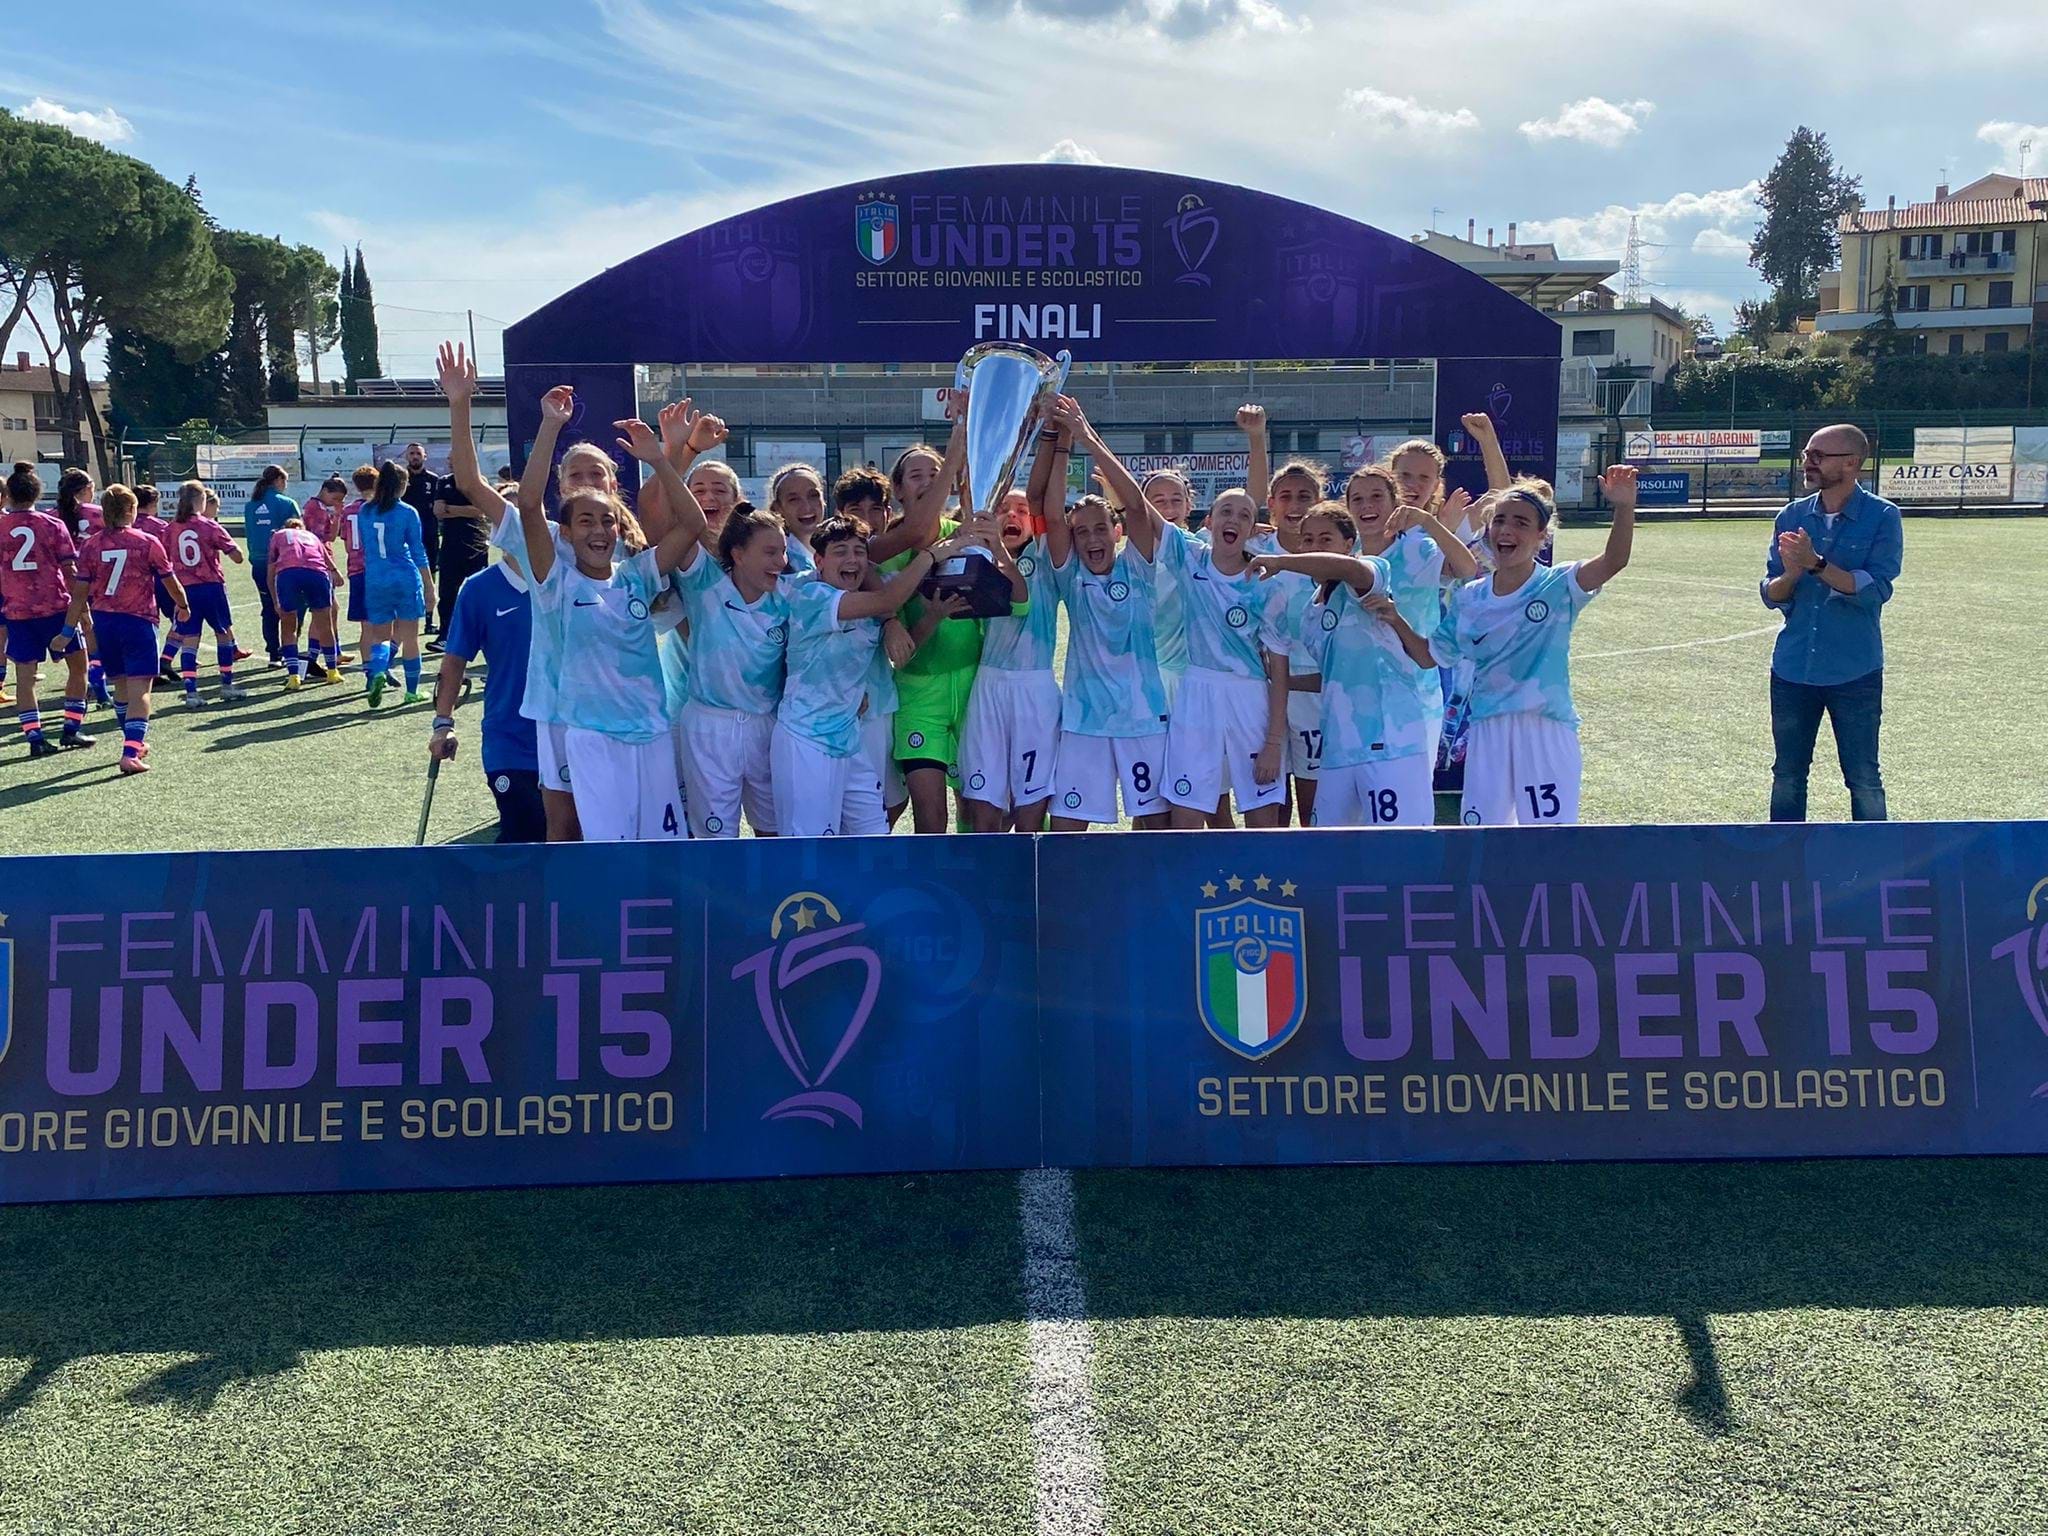 Under 15 Femminile: all’Inter la vittoria del torneo pre-season 2022